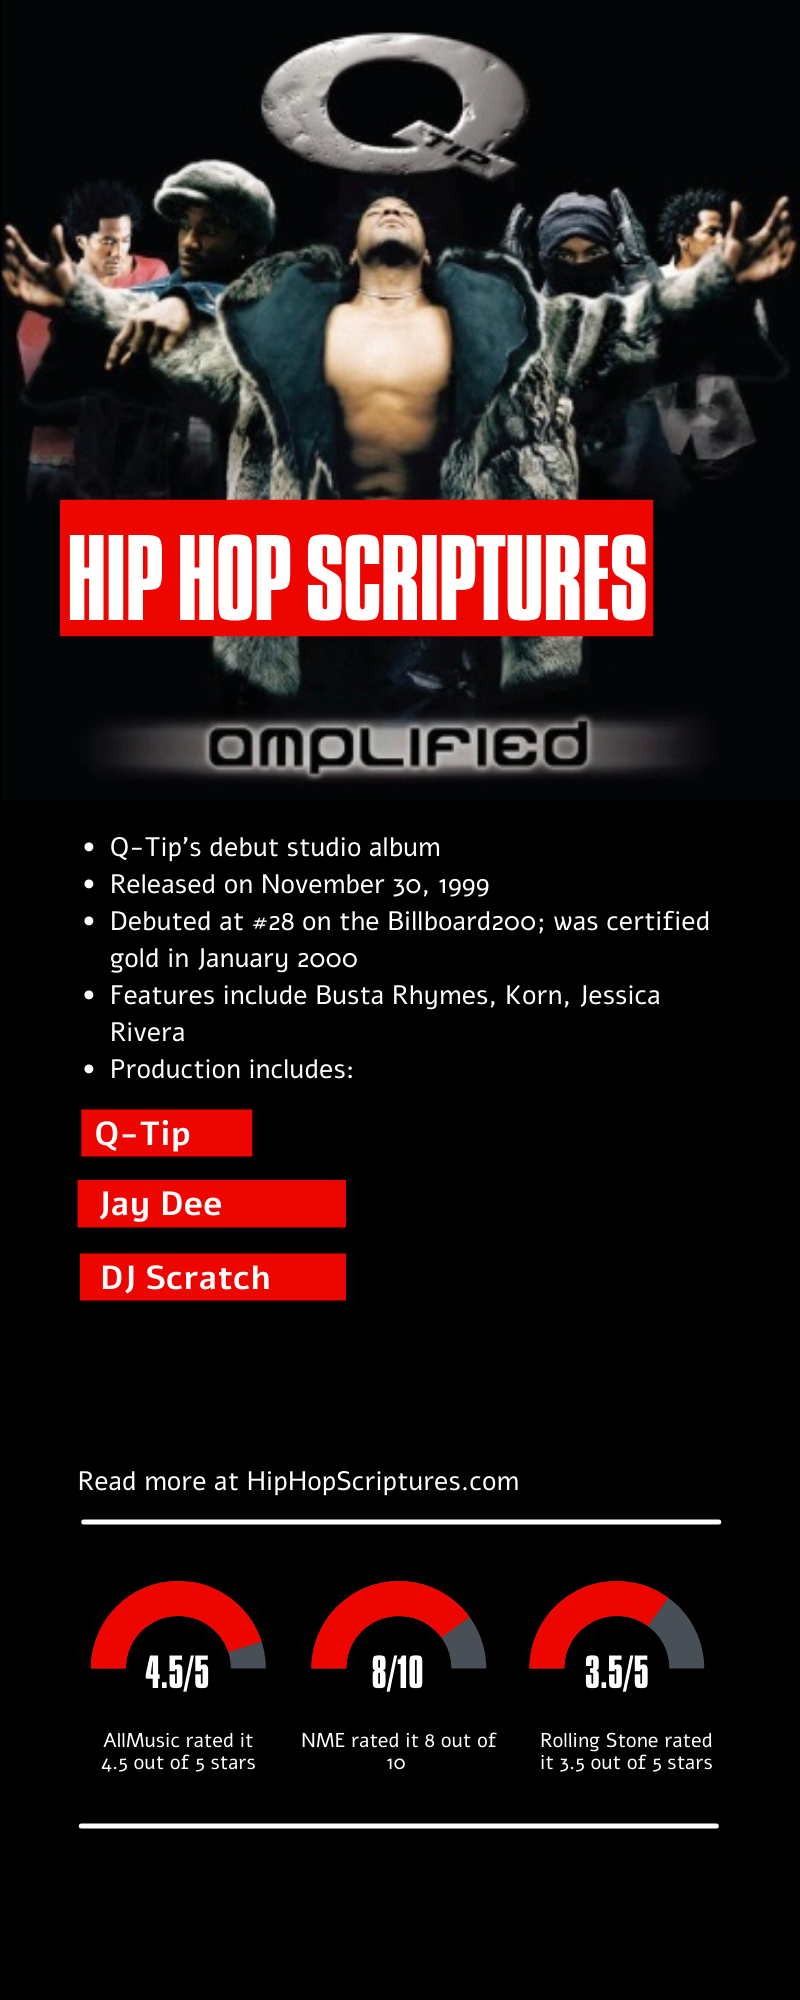 Q-Tip's Amplified Album Anniversary